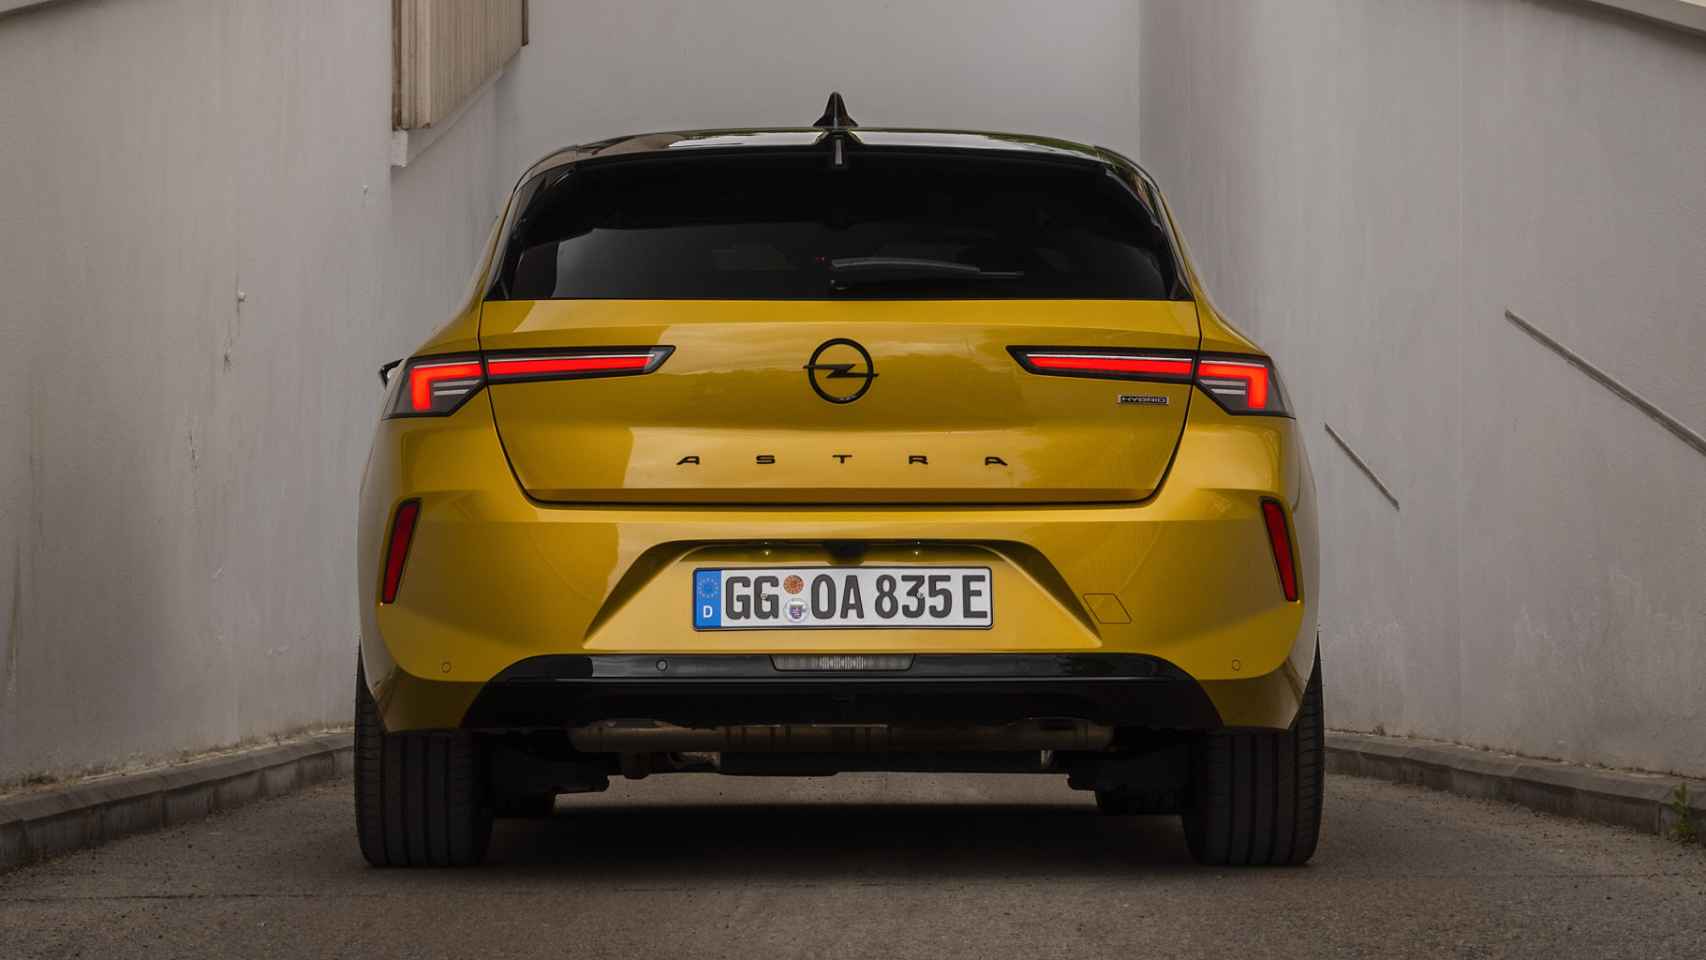 El Opel Astra híbrido enchufable tiene una capacidad de maletero de 352 litros.